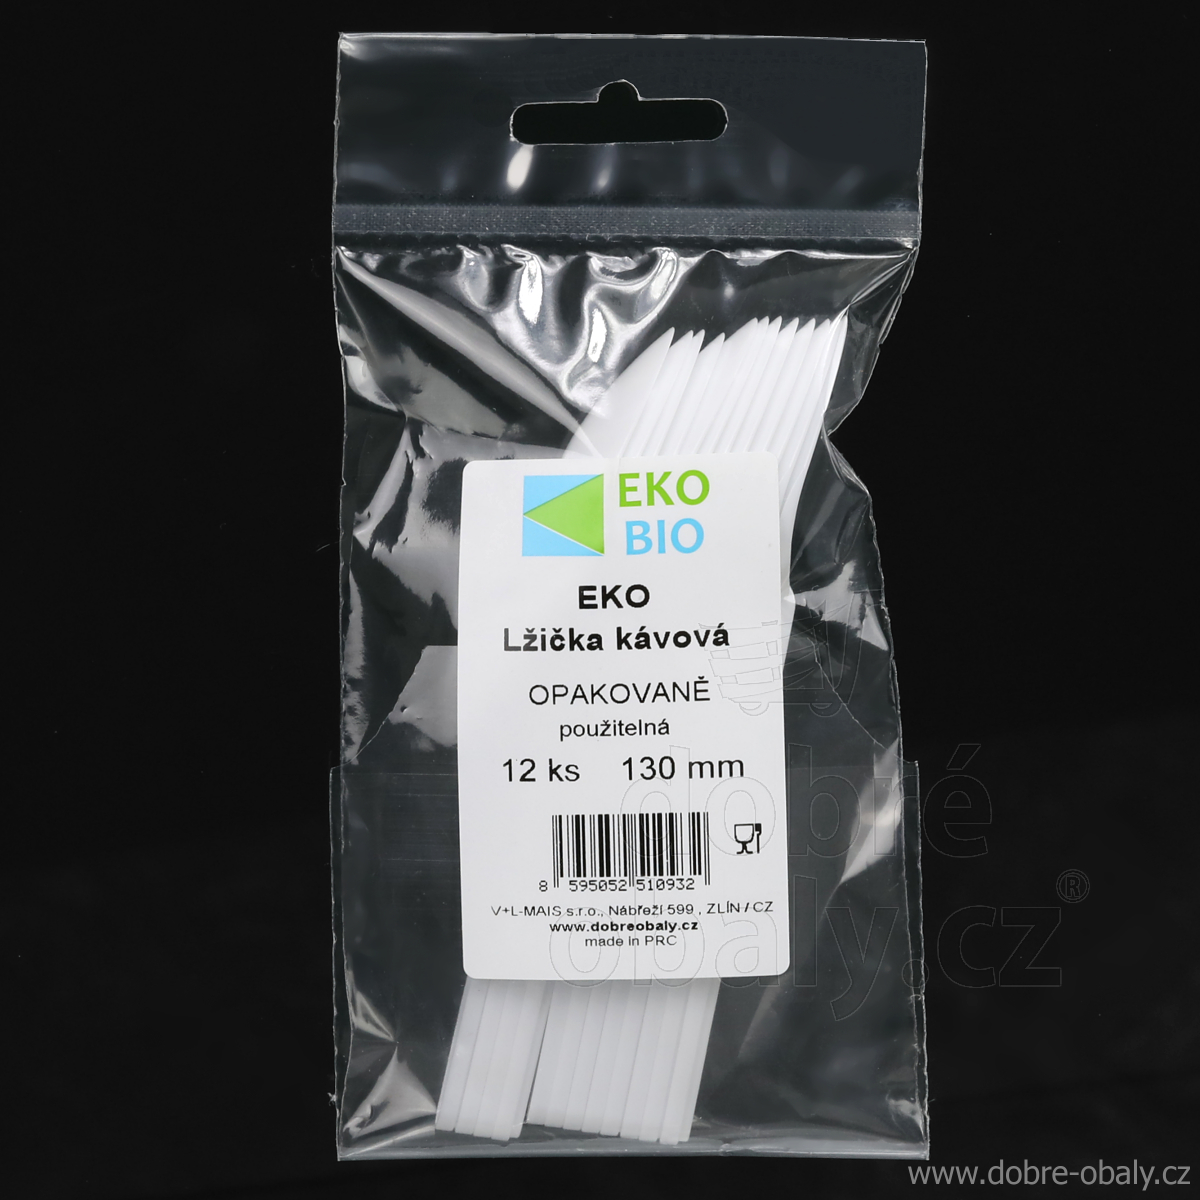 EKO-BIO Opakovaně použitelné kávové lžičky, 12 ks